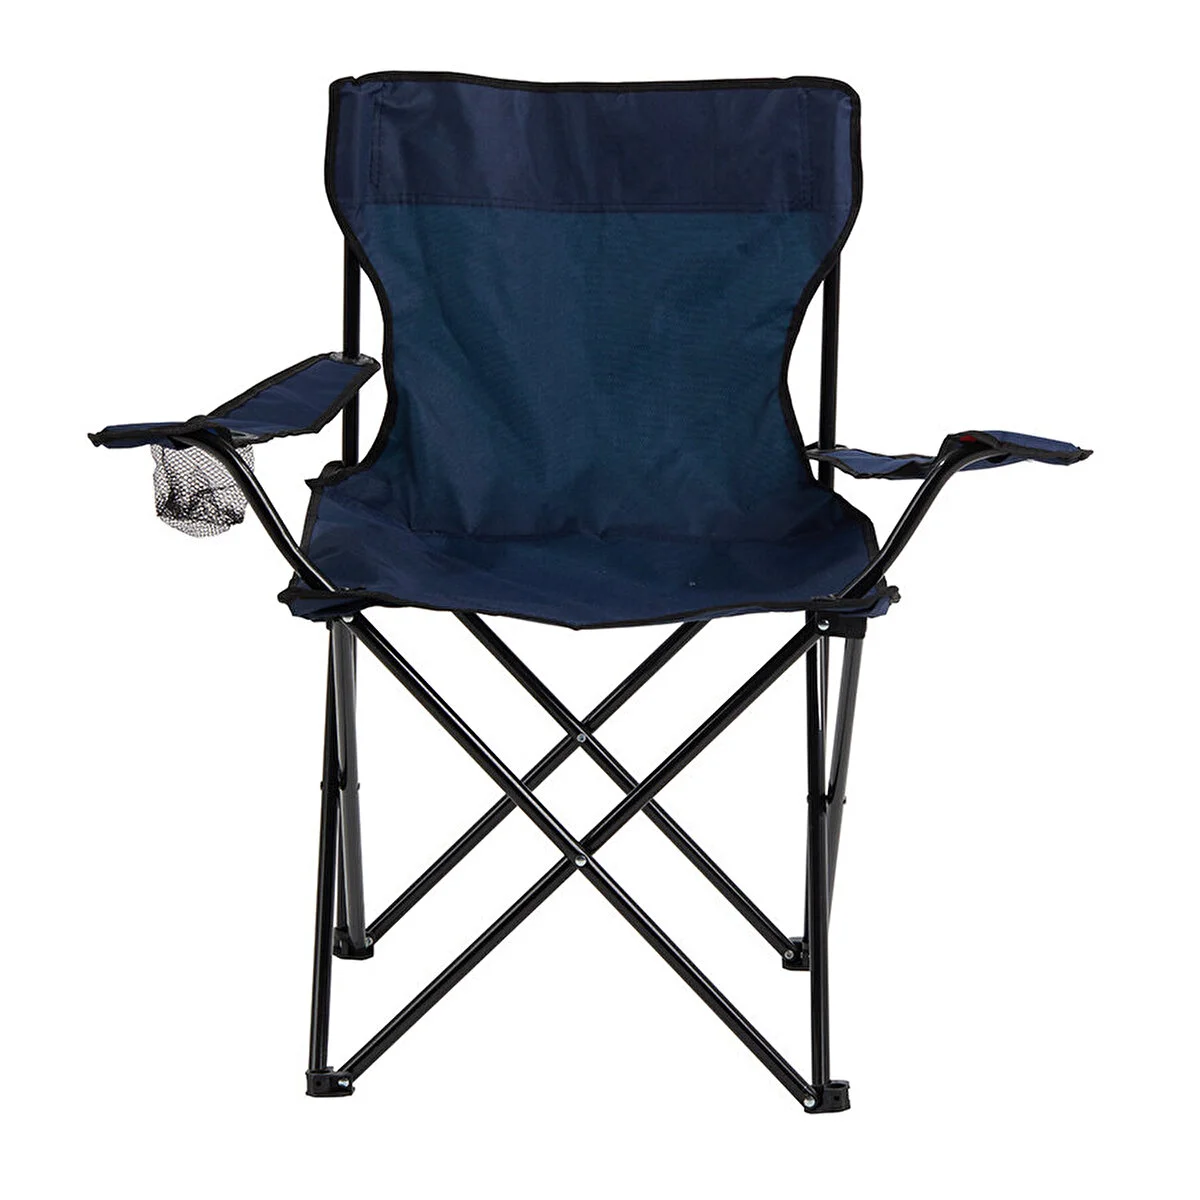  - Basic Metal İskelet Katlanabilir Kamp Sandalyesi Lacivert